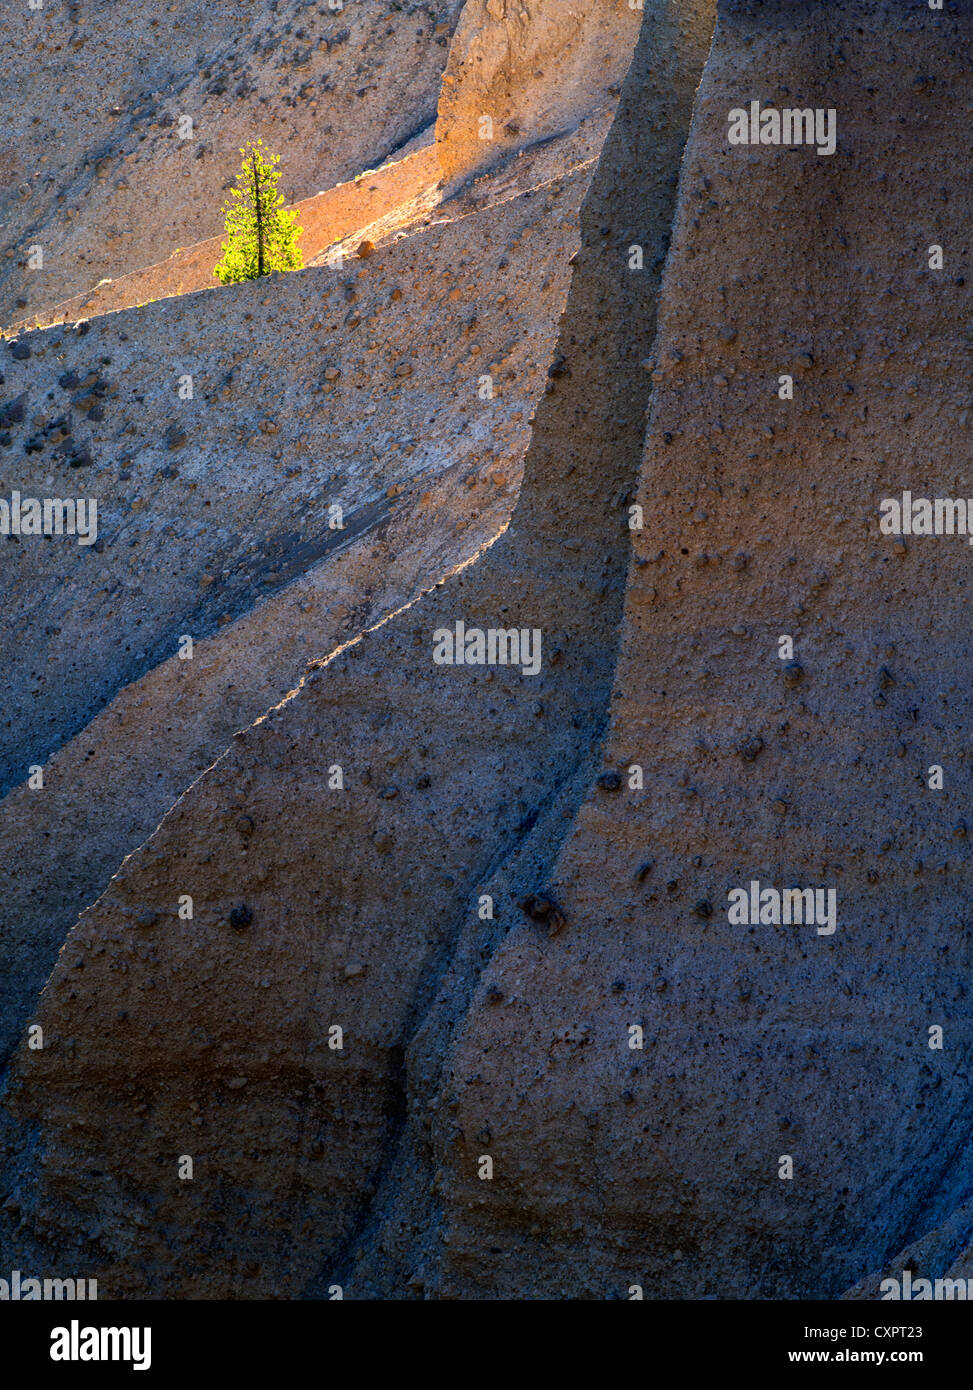 Einsamer Hintergrundbeleuchtung Baum. Crater Lake Nationalpark, Oregon. Vulkanische Ablagerung. Oregon die Pinnacles, scharfe Messer Grat, Stockfoto